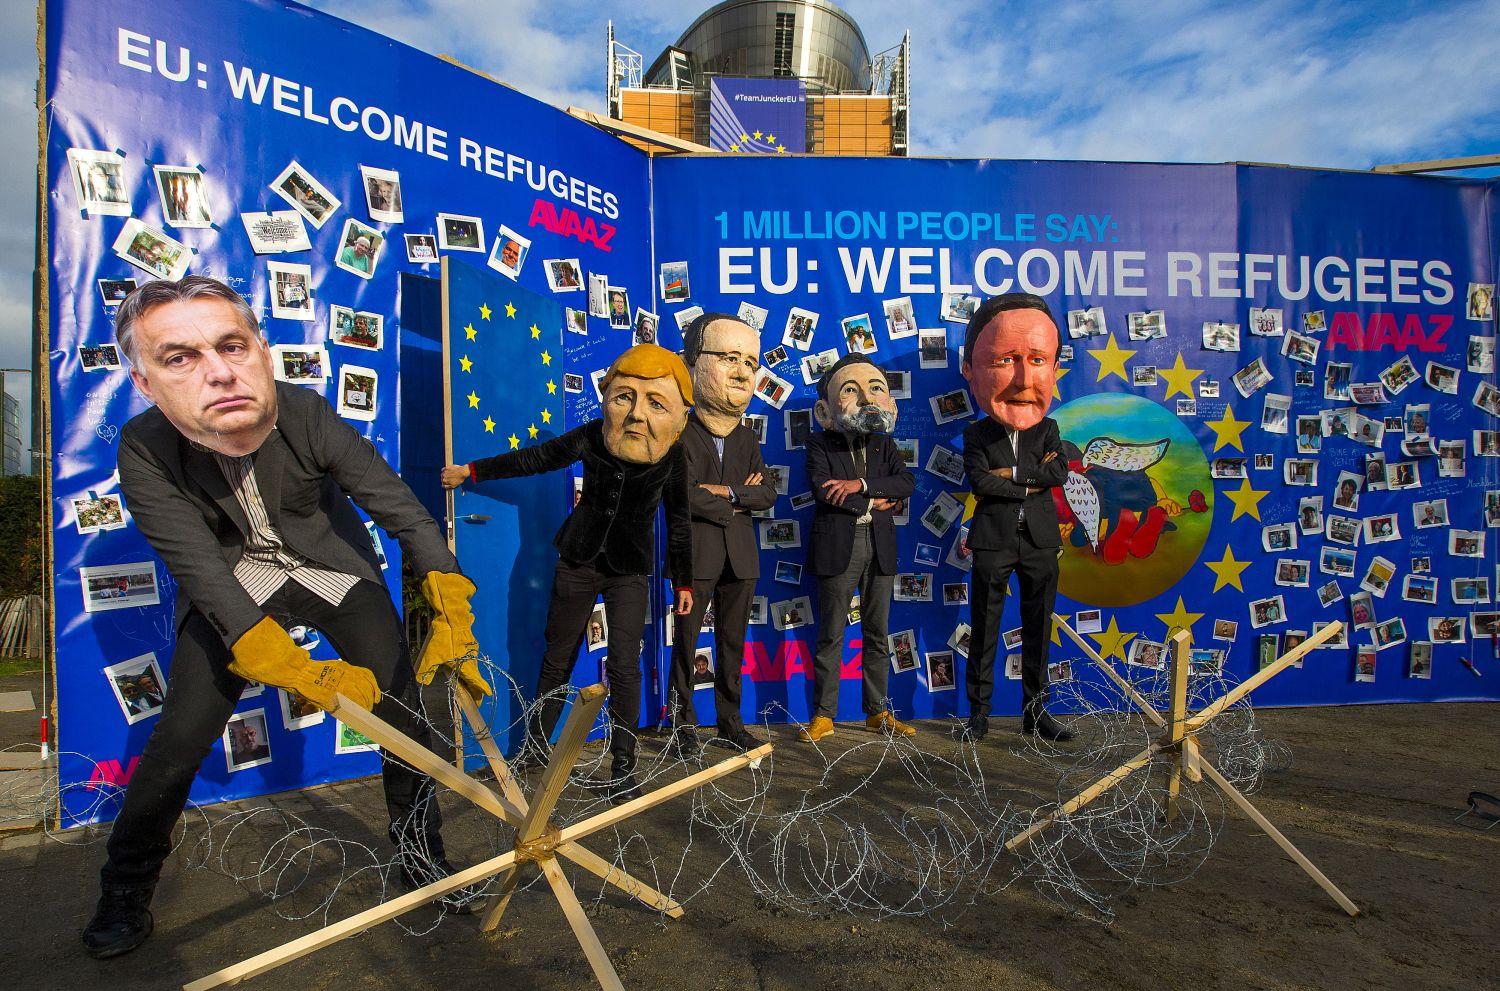 Az Avaaz civil aktivista csoport tagjainak performansza Brüsszelben, az EU-csúcsra időzítve (a maszkok balról jobbra: Orbán Viktor magyar miniszterelnök, Angela Merkel német kancellár,  Francois Hollande francia államfő; Mariano Rajo spanyol és David